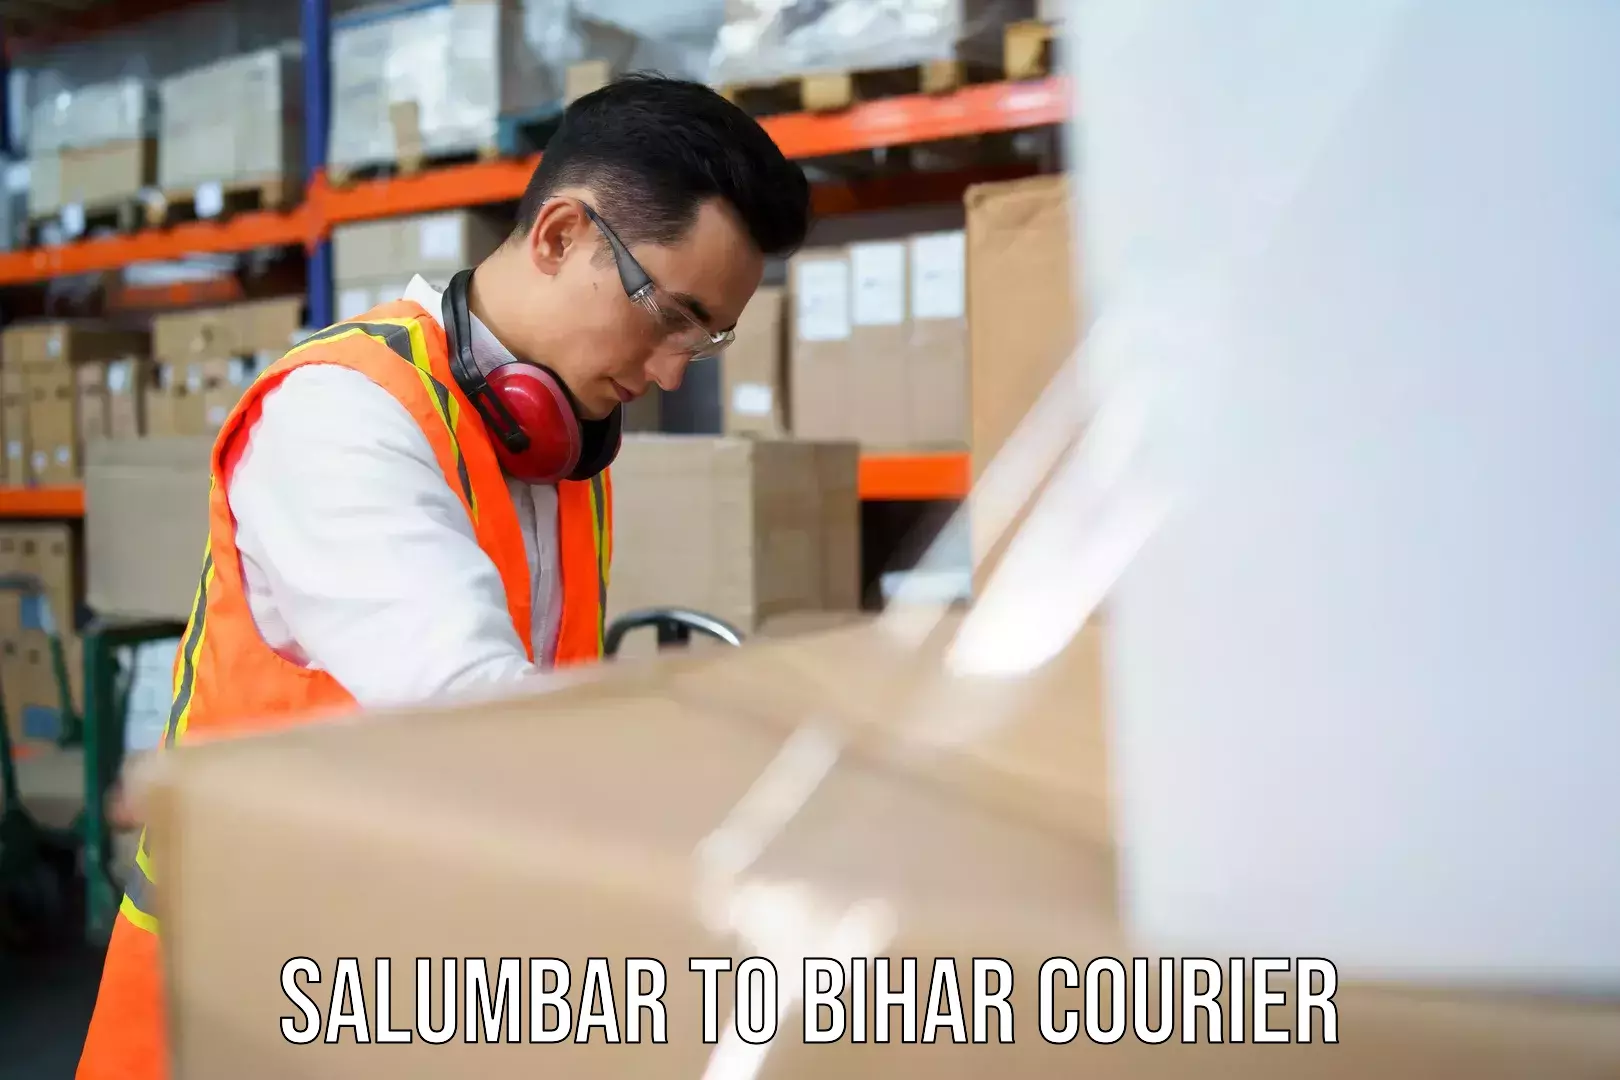 Global courier networks Salumbar to Bihar